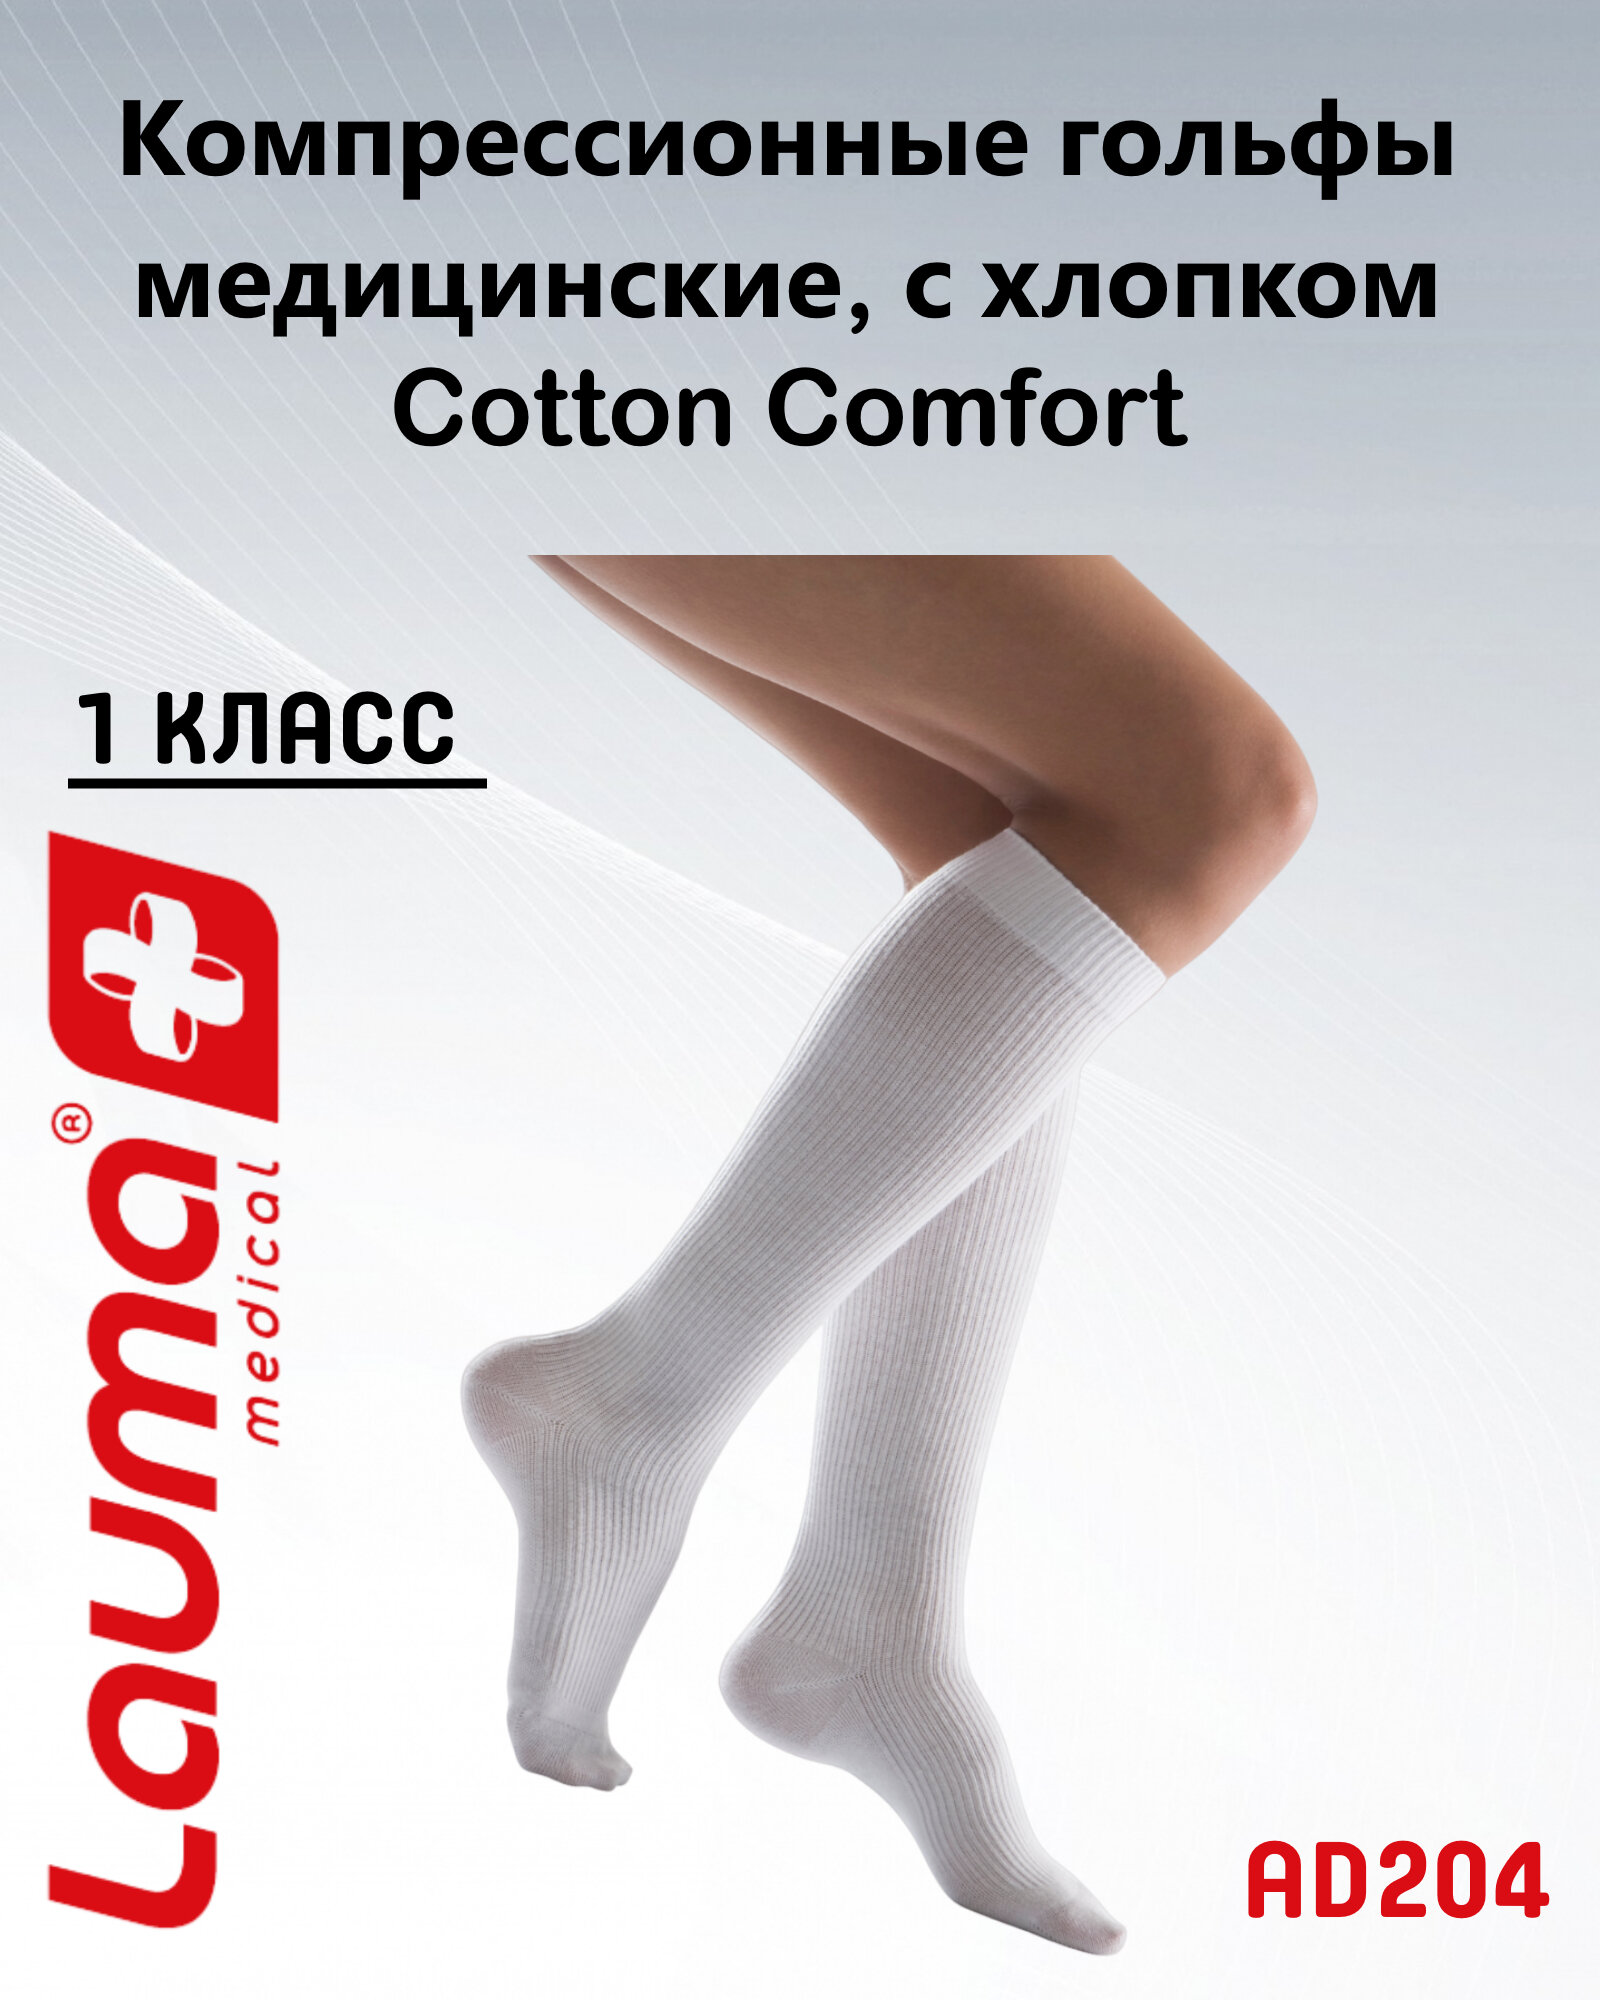 Гольфы медицинские компрессионные Лаума Медикал Cotton Comfort 1 класса компрессии, цельные, арт. AD204, размер 39-41, цвет белый